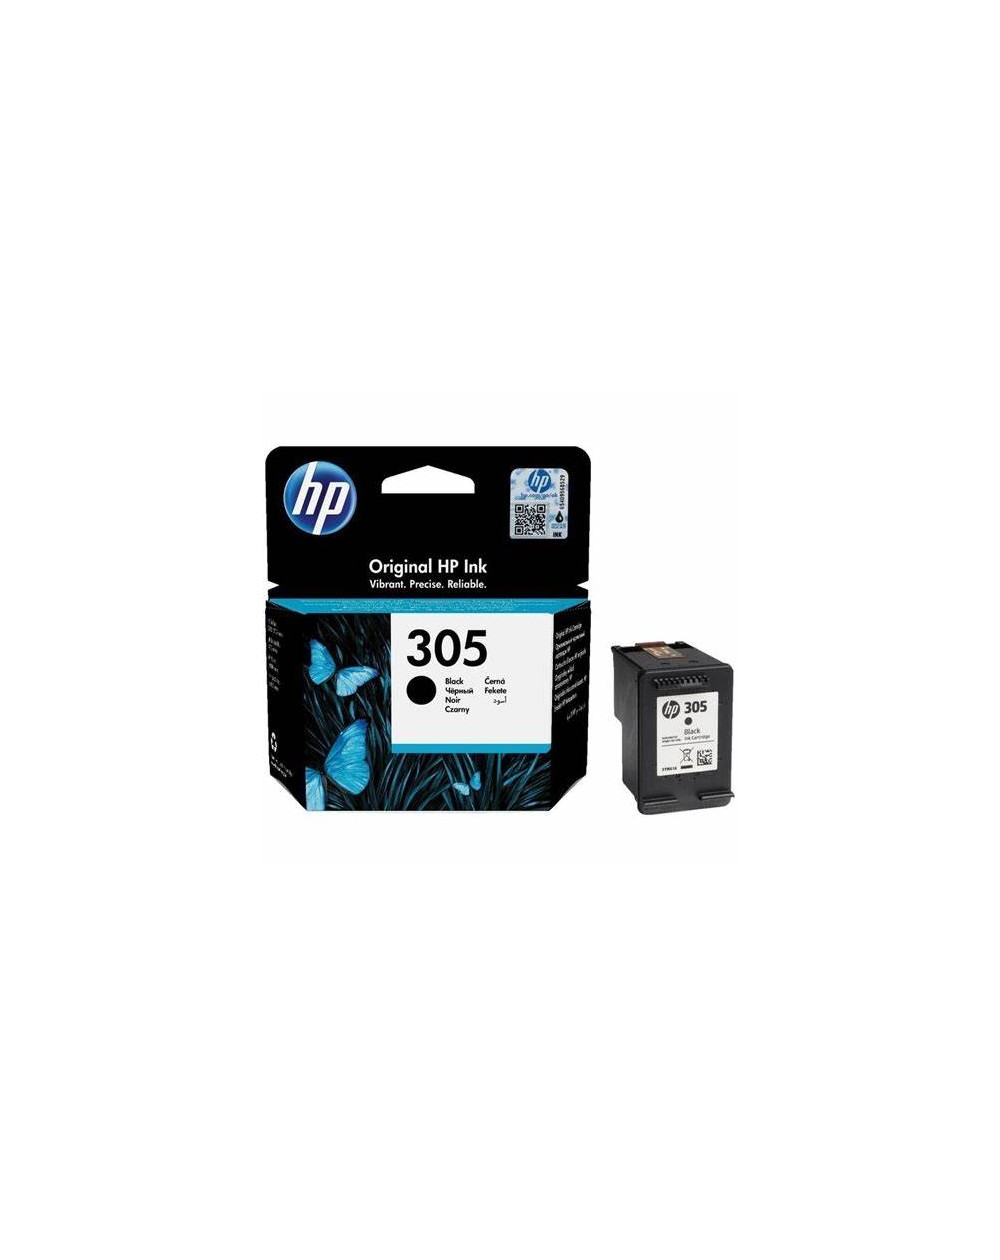 HP 305 Cartouche d'encre noire authentique (3YM61AE) pour HP DeskJet 2